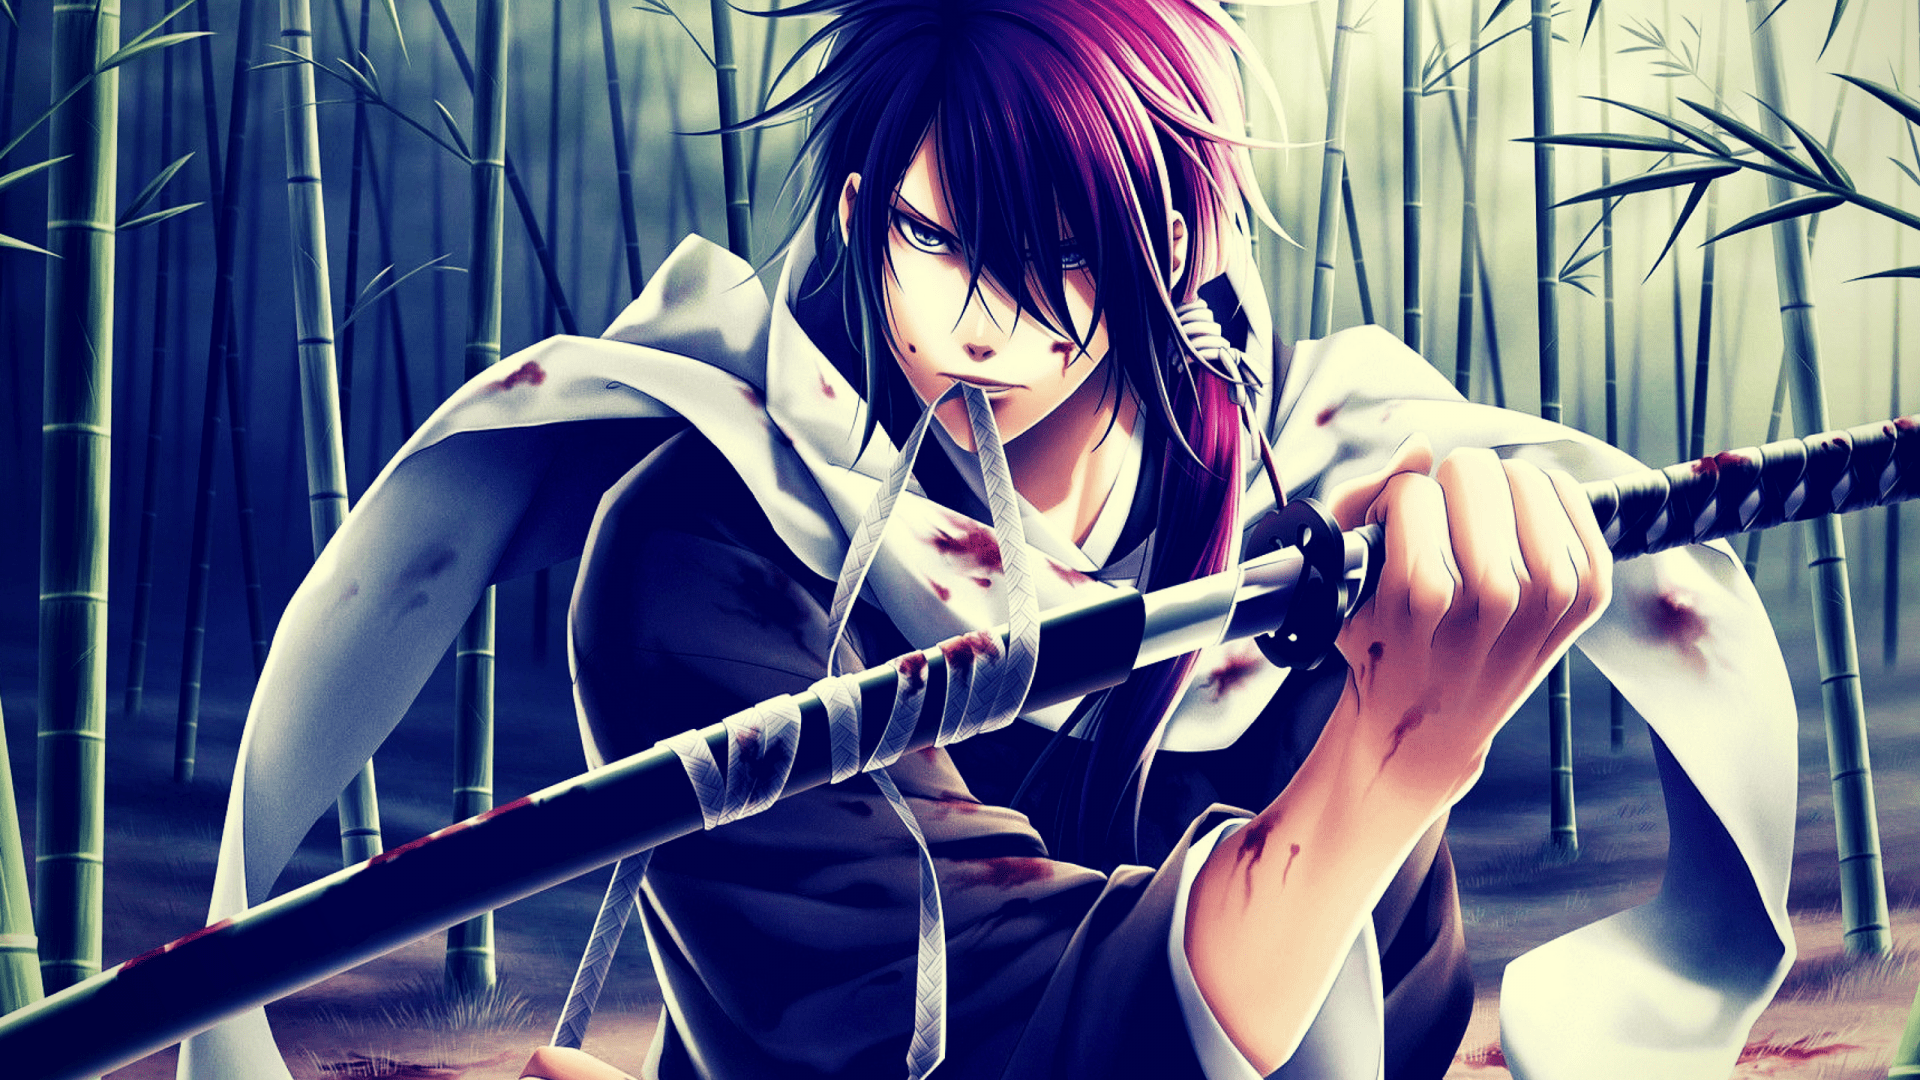 10 strongest swordsmen in anime ranked